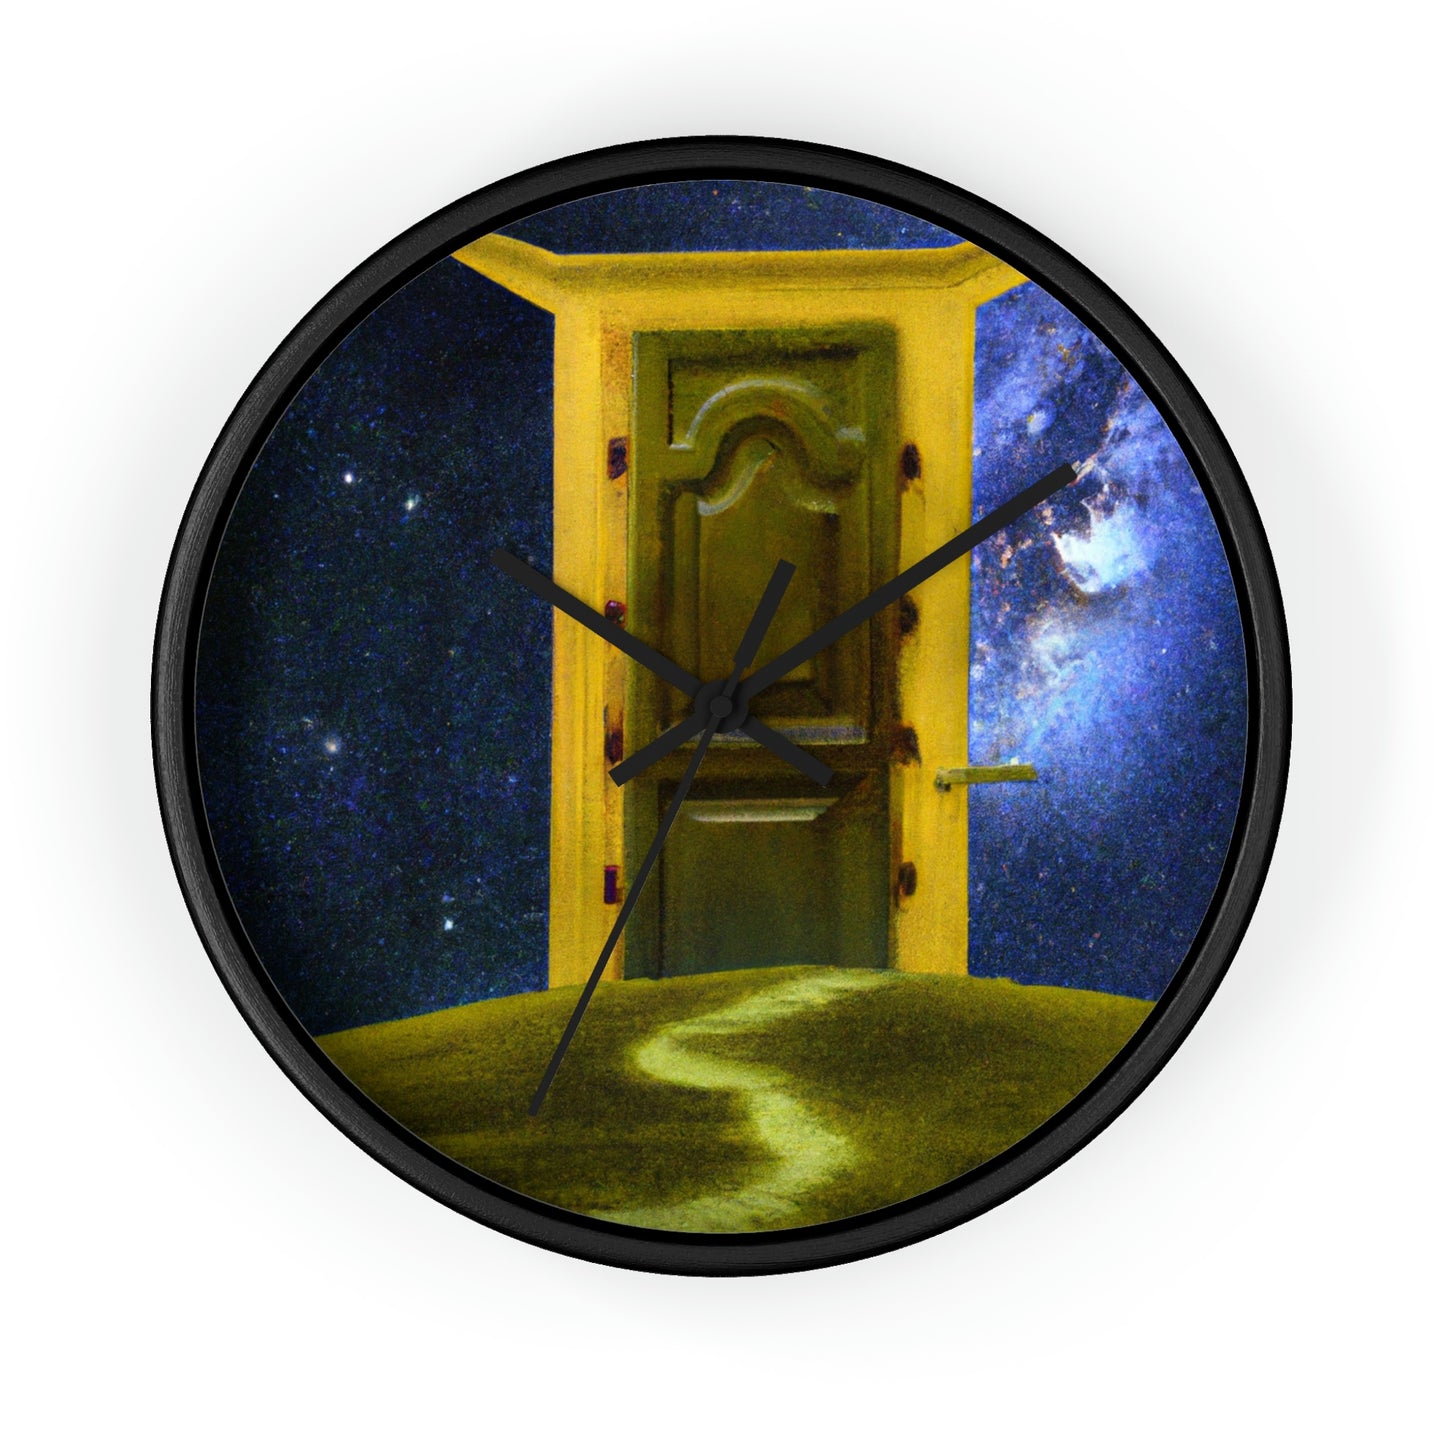 El umbral celestial - El reloj de pared alienígena